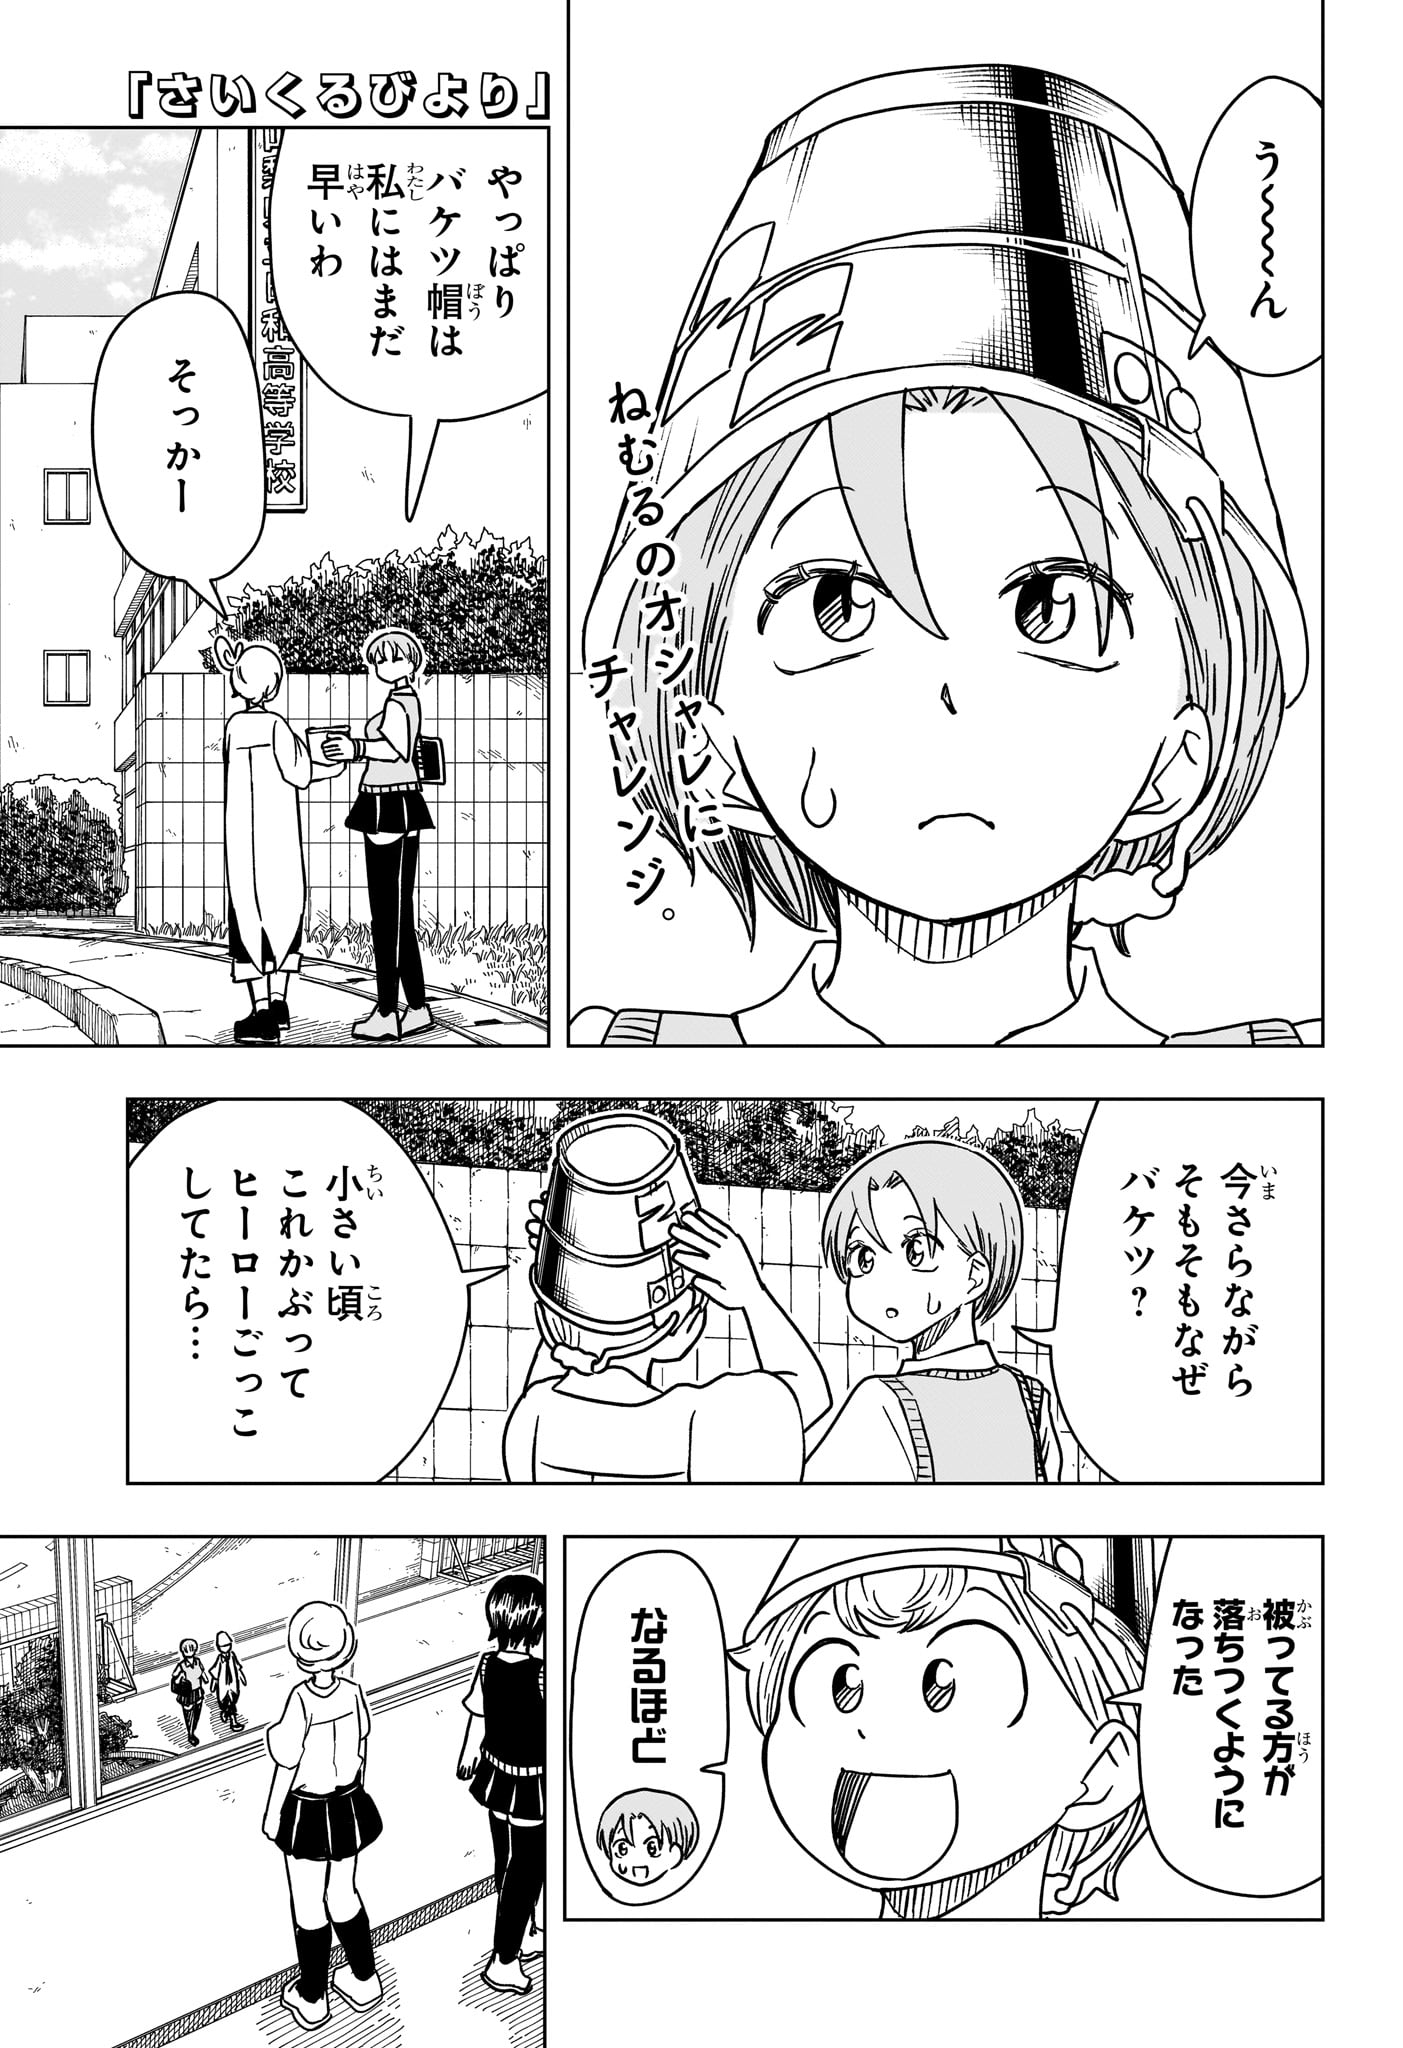 Saikuru Biyori - Chapter 11 - Page 1